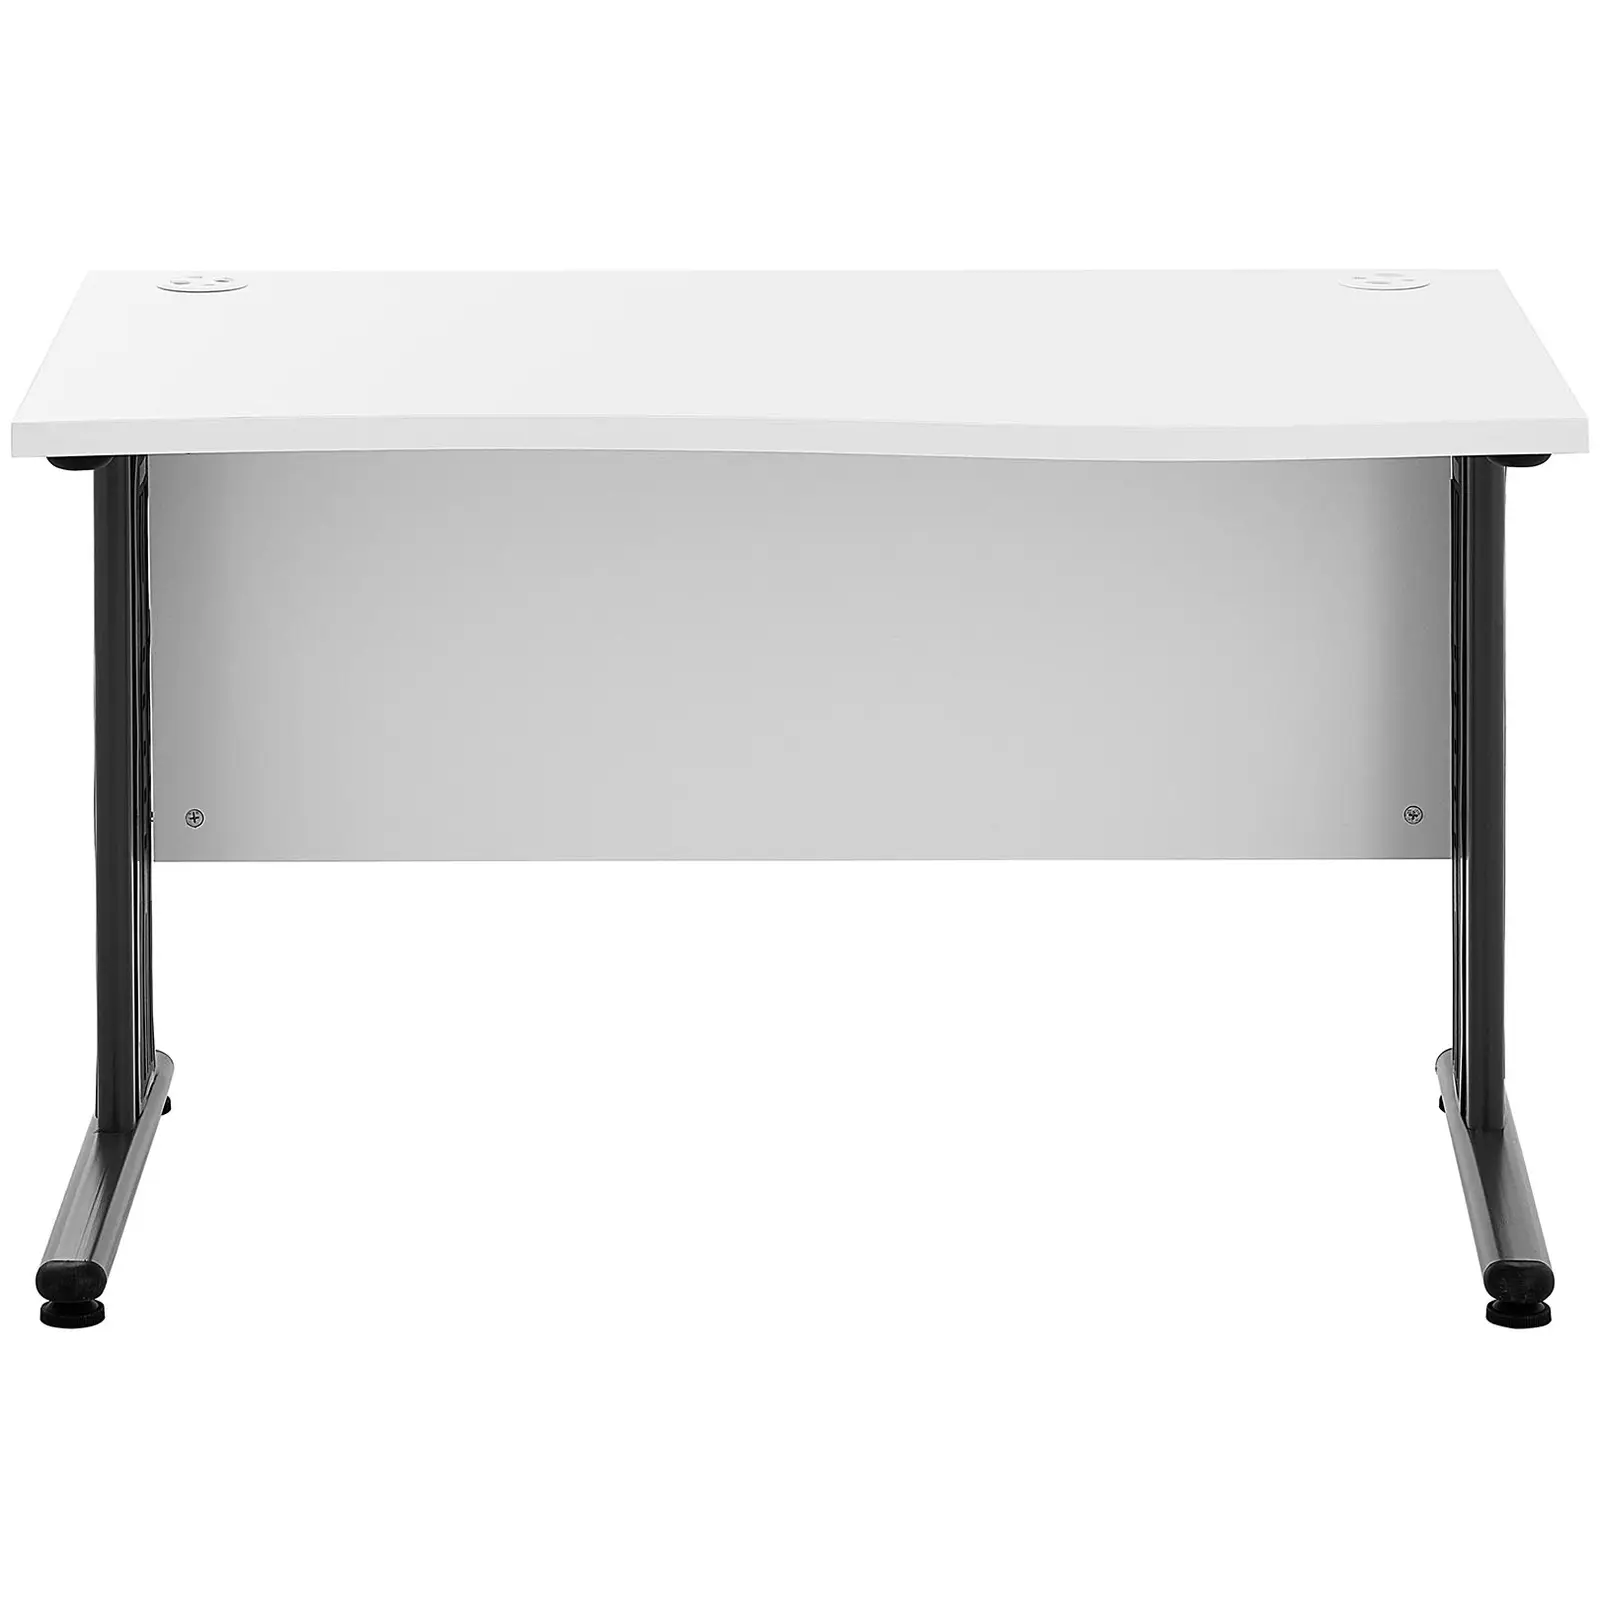 Kancelářský stůl - 120 x 73 cm - bílá / šedá